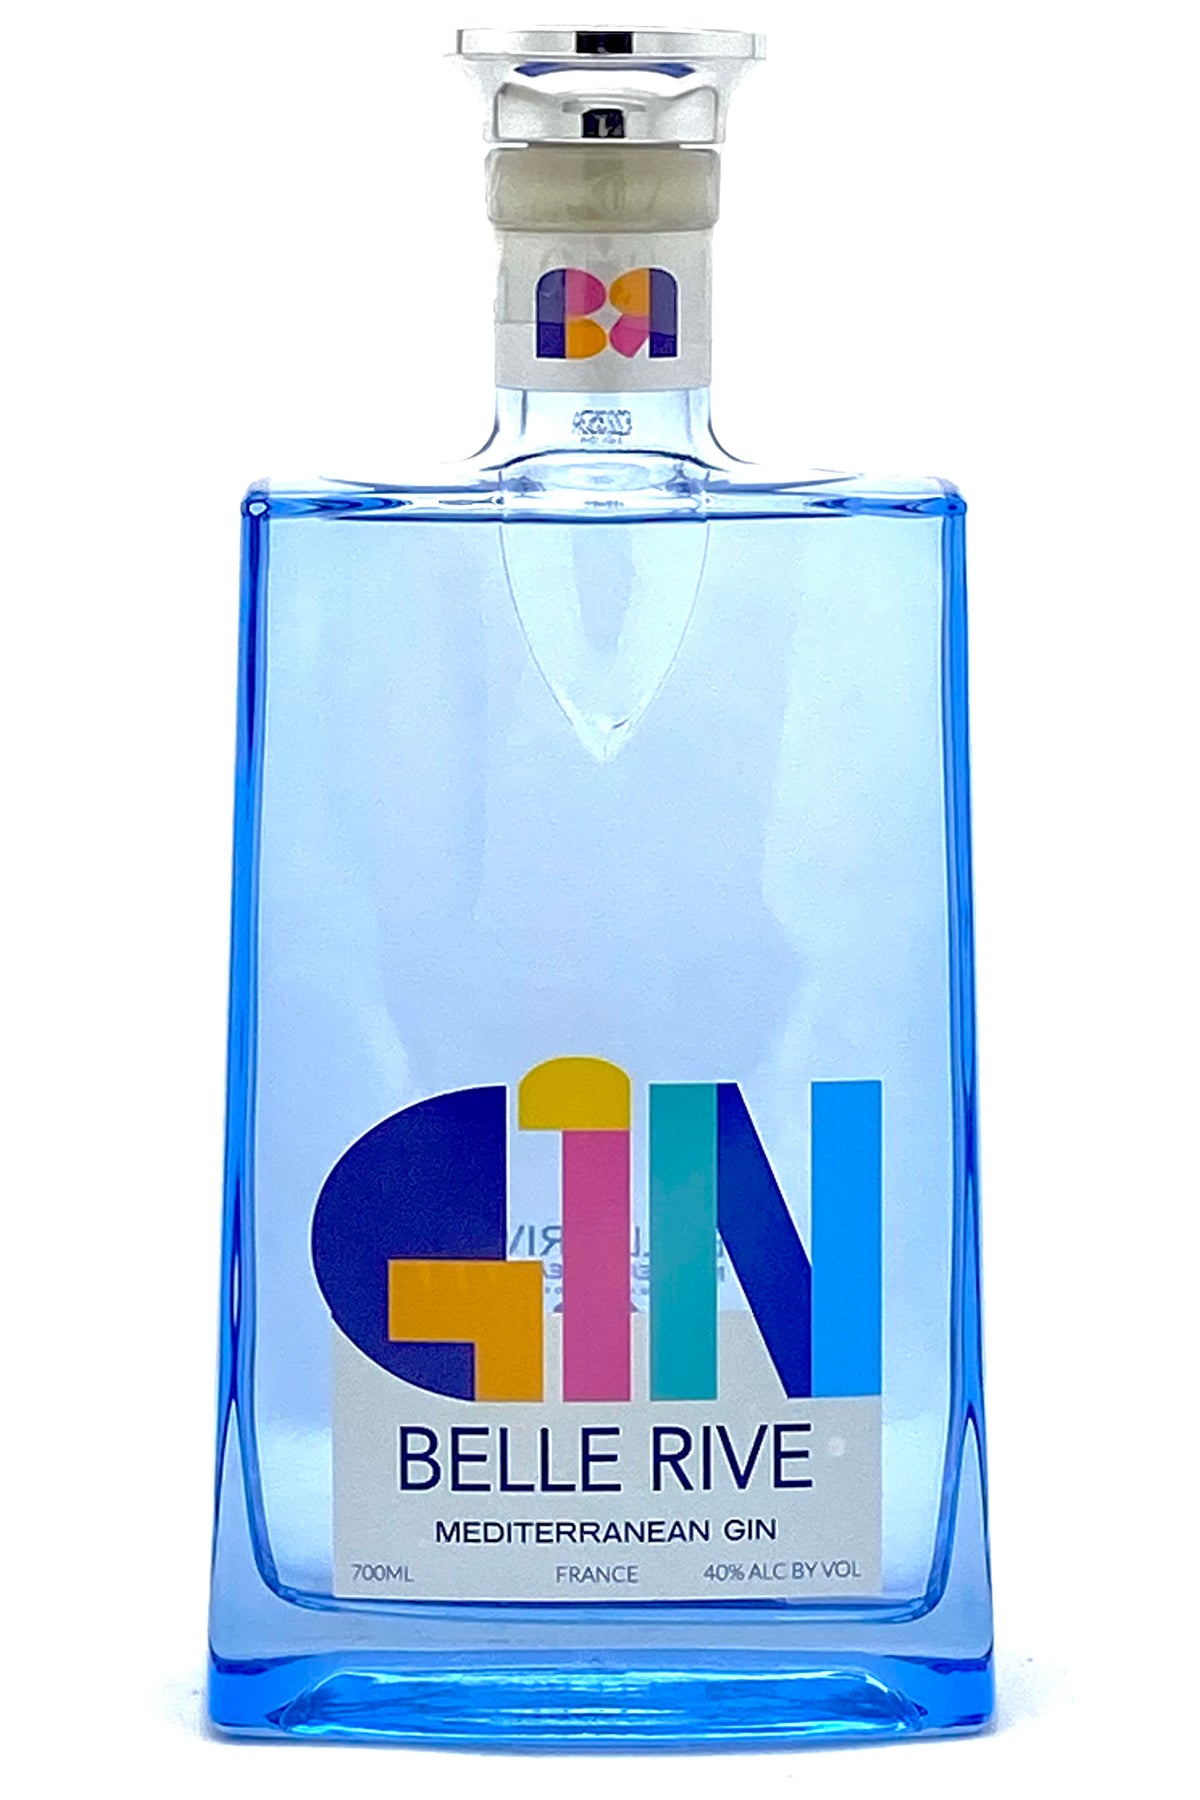 Belle Rive Gin Mediterranean